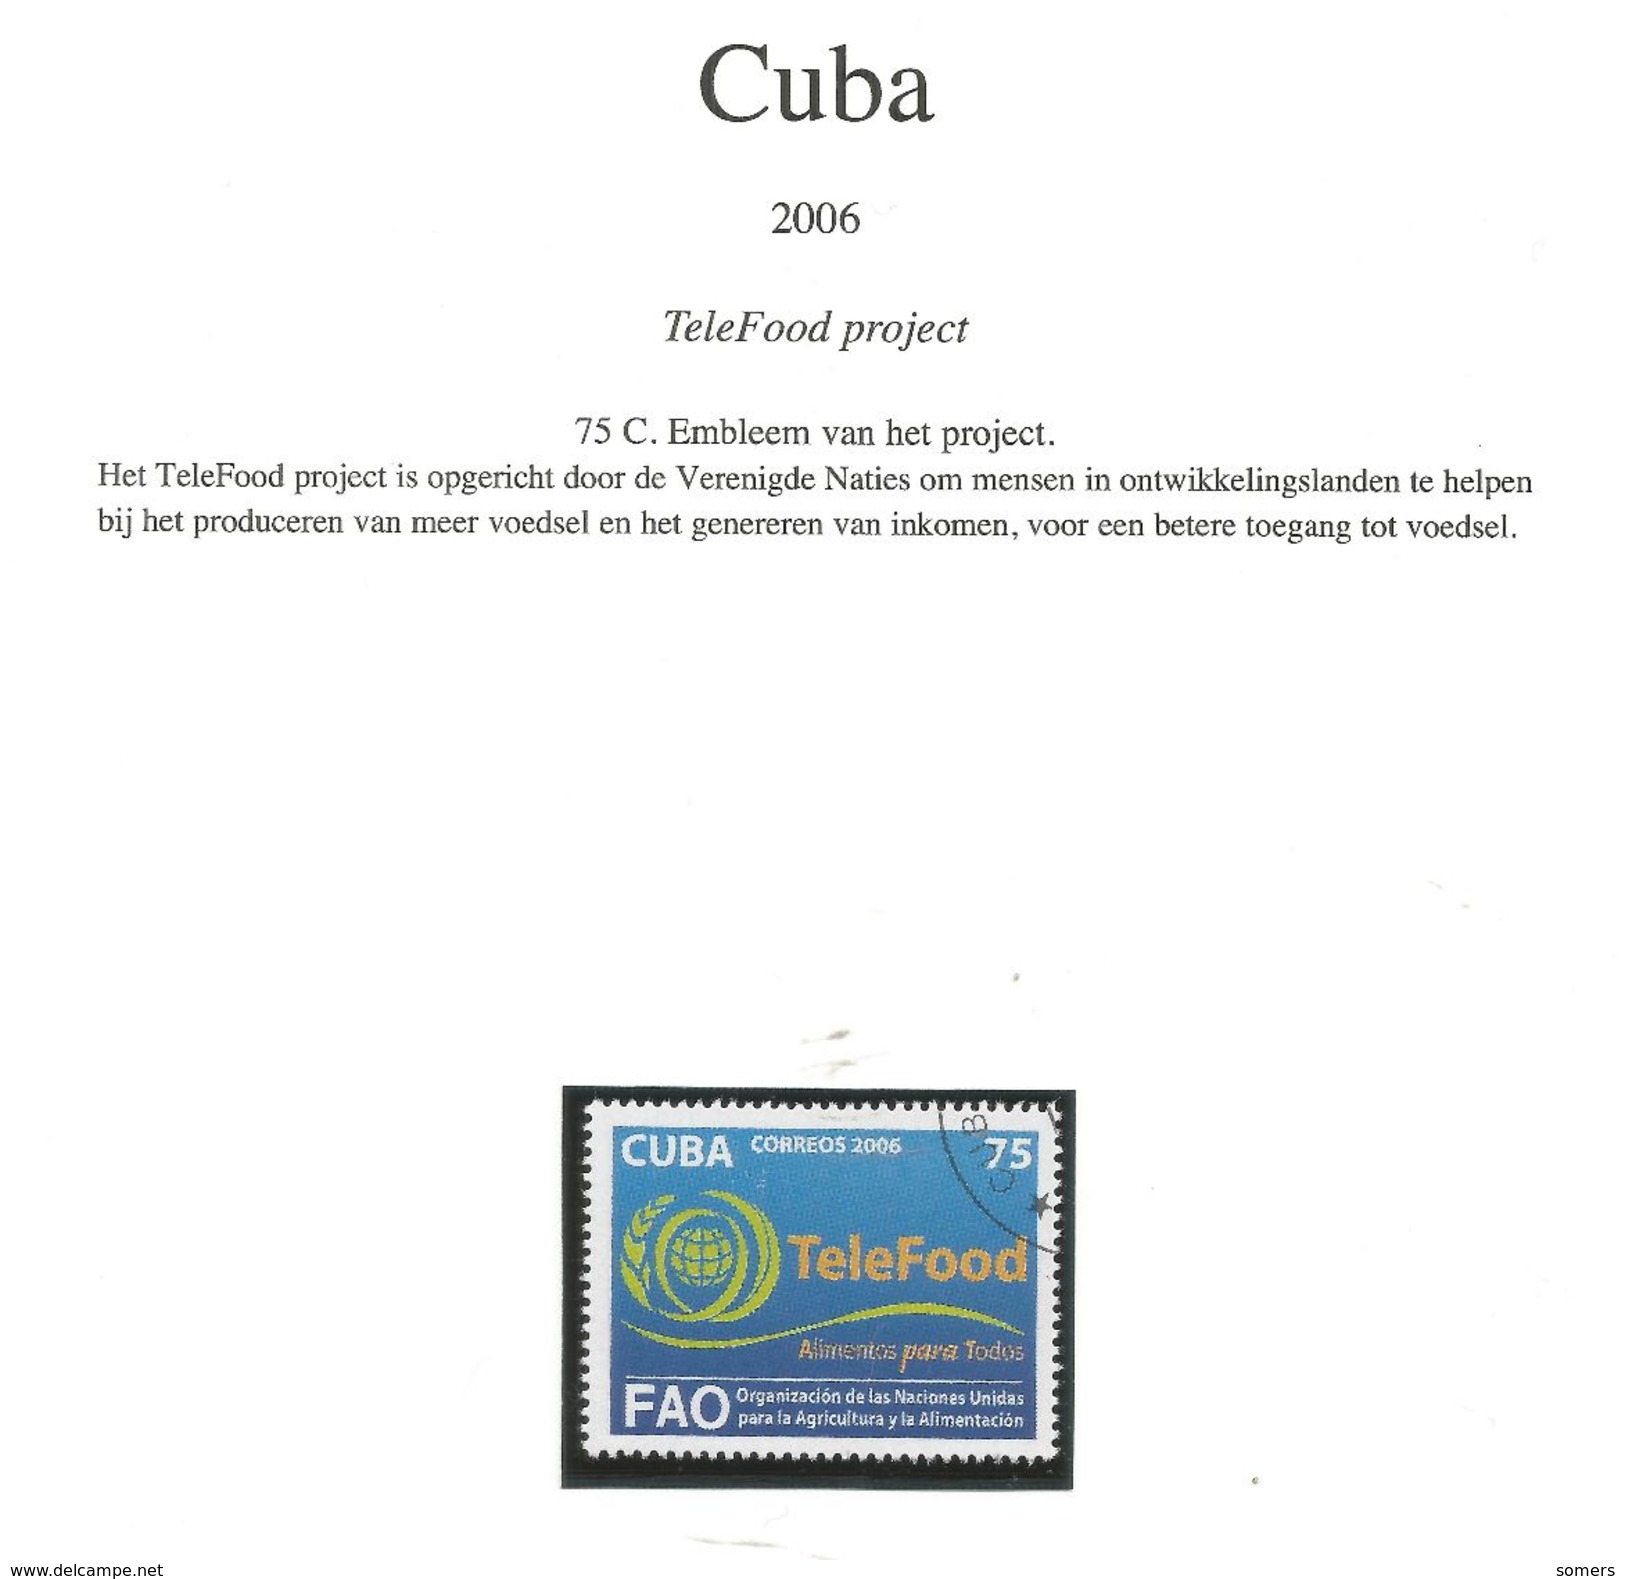 CUBA - BIJZONDERE - EN GELEGENHEIDSUITGIFTEN op voorafgedrukte blzdn ... O ...  zie scans  !!! SUPER SALE !!!